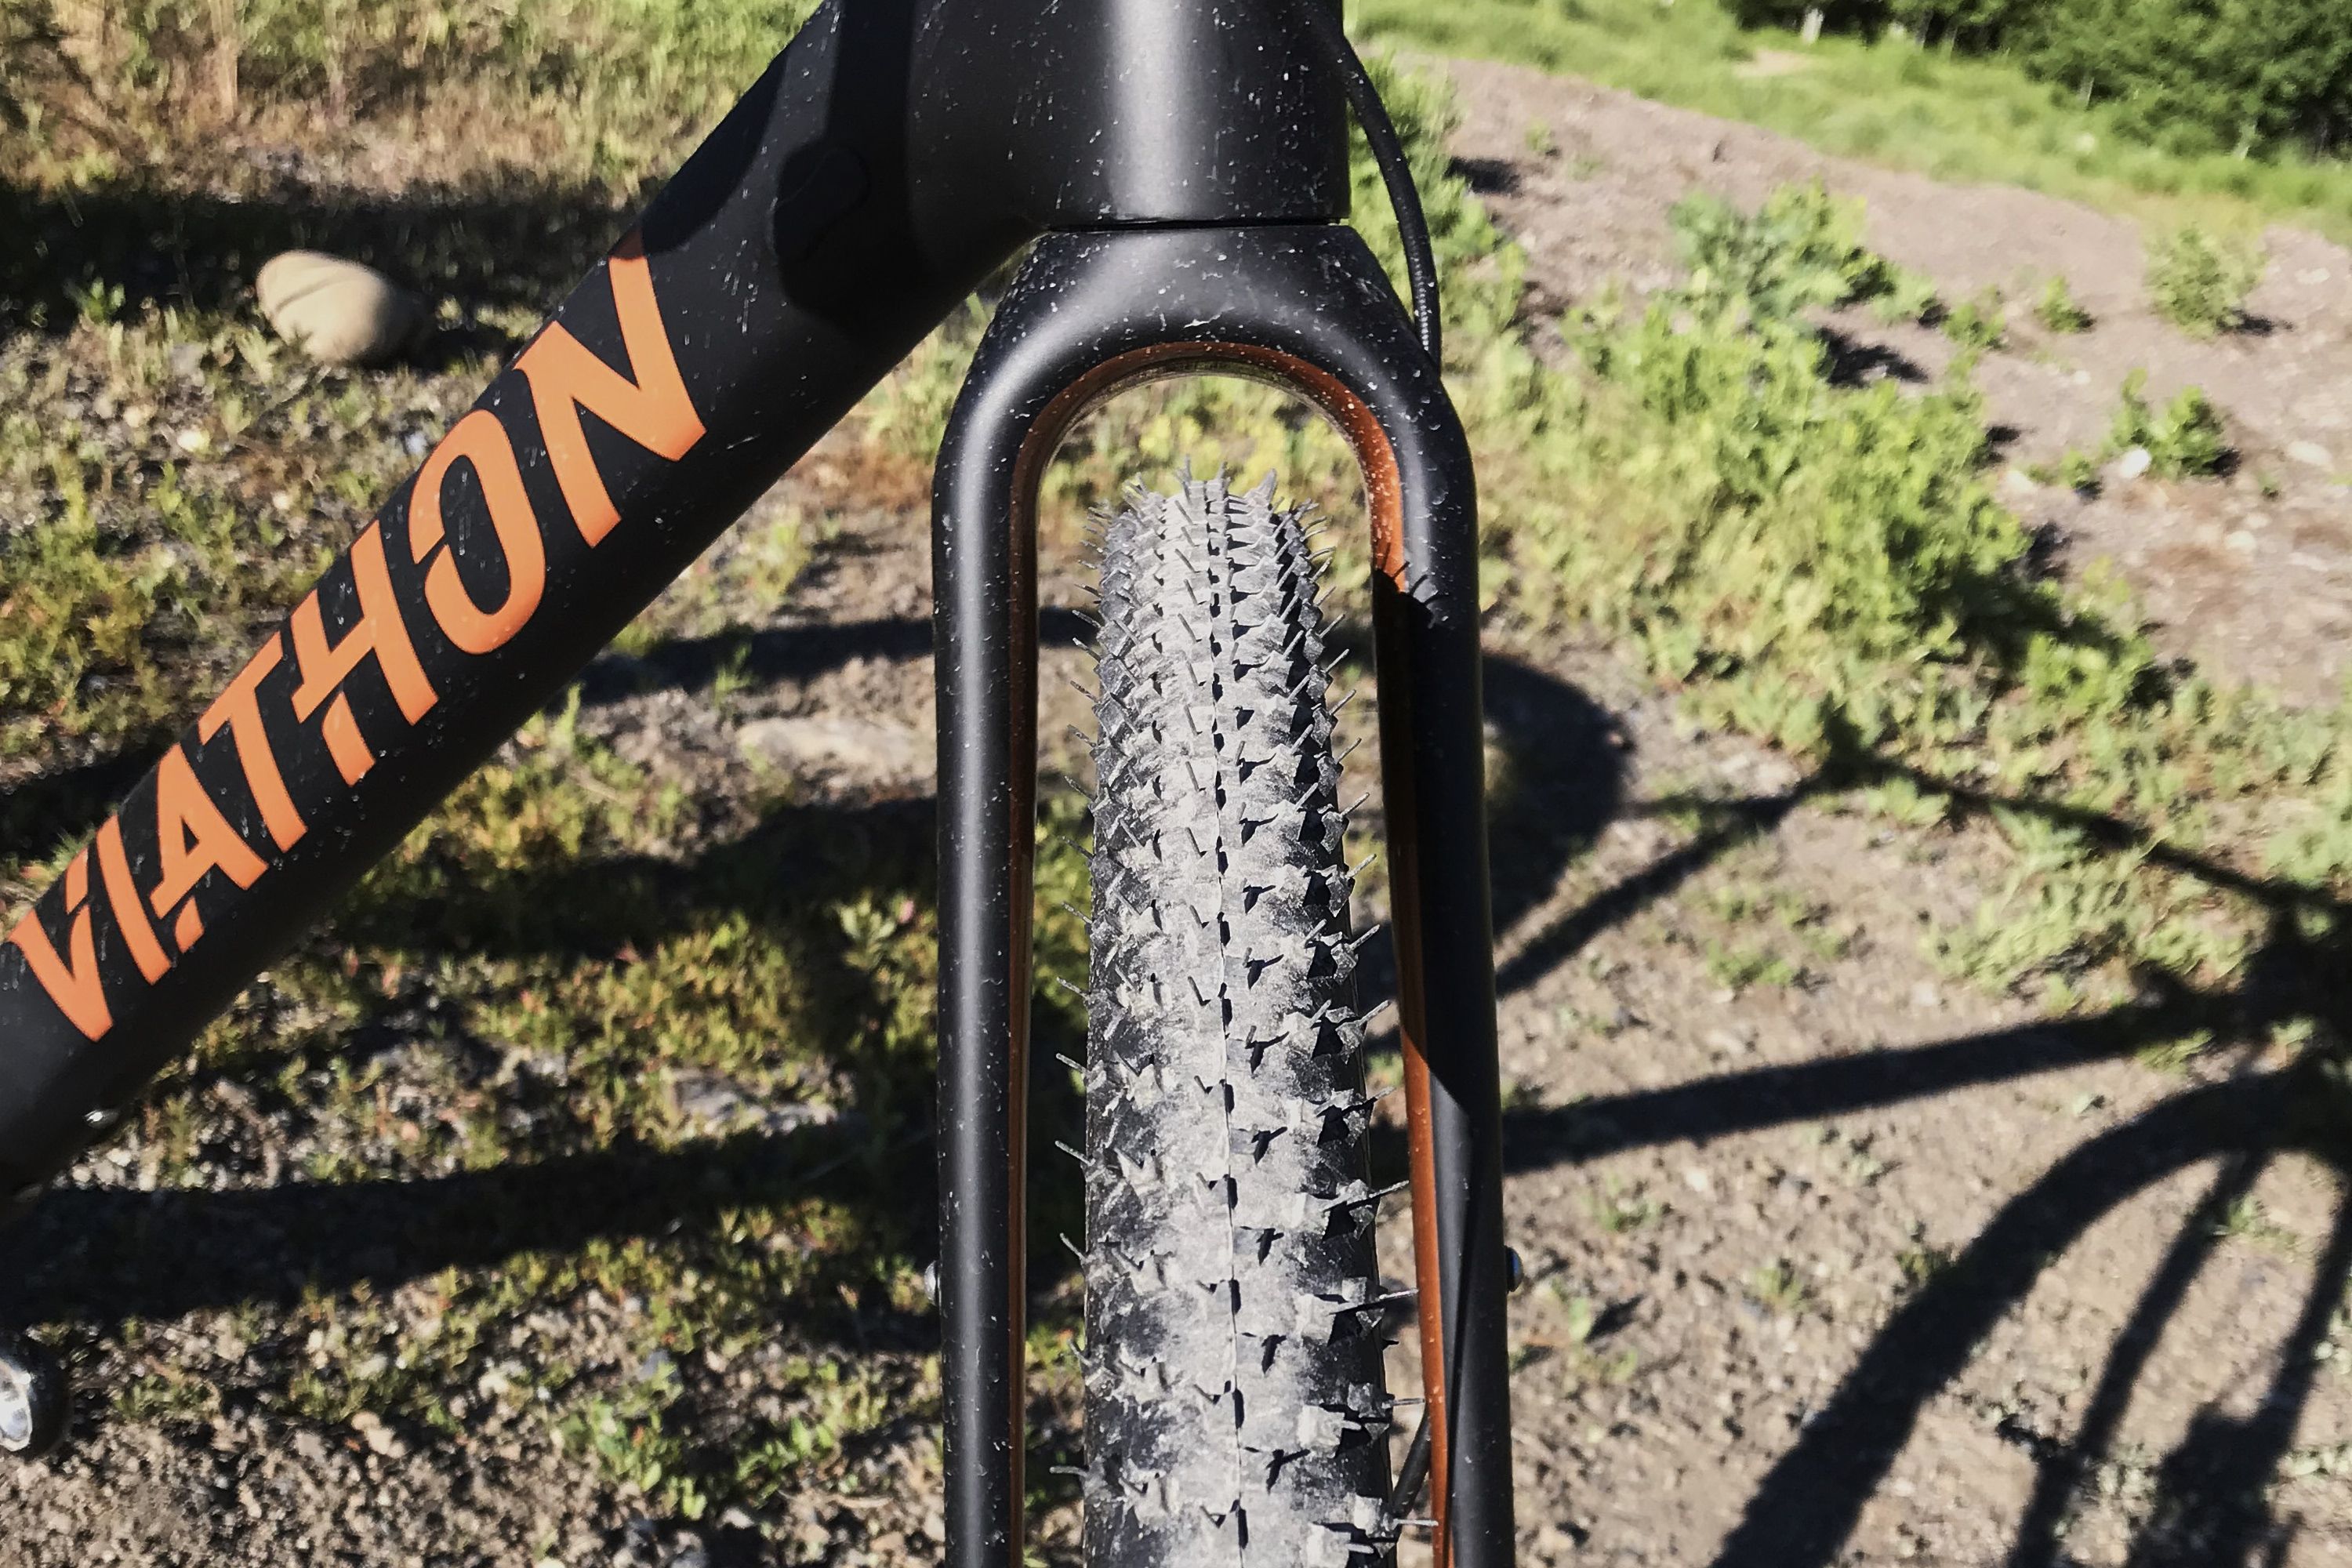 viathon gravel bike review